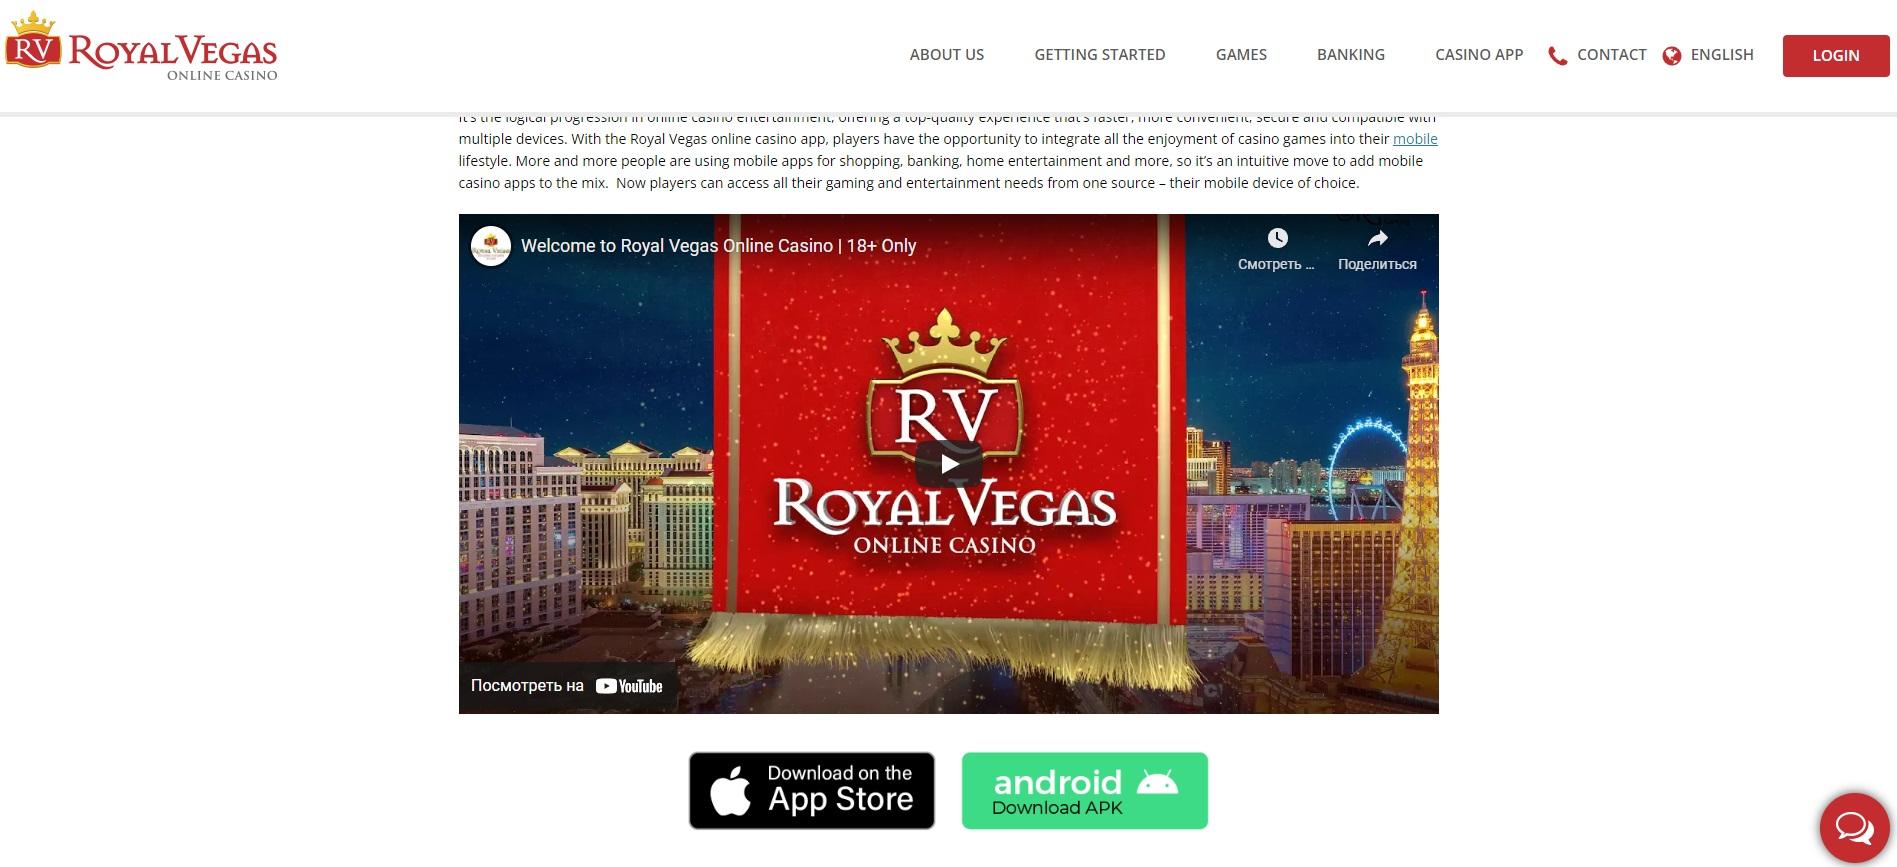 Mobilna aplikacija RoyalVegas